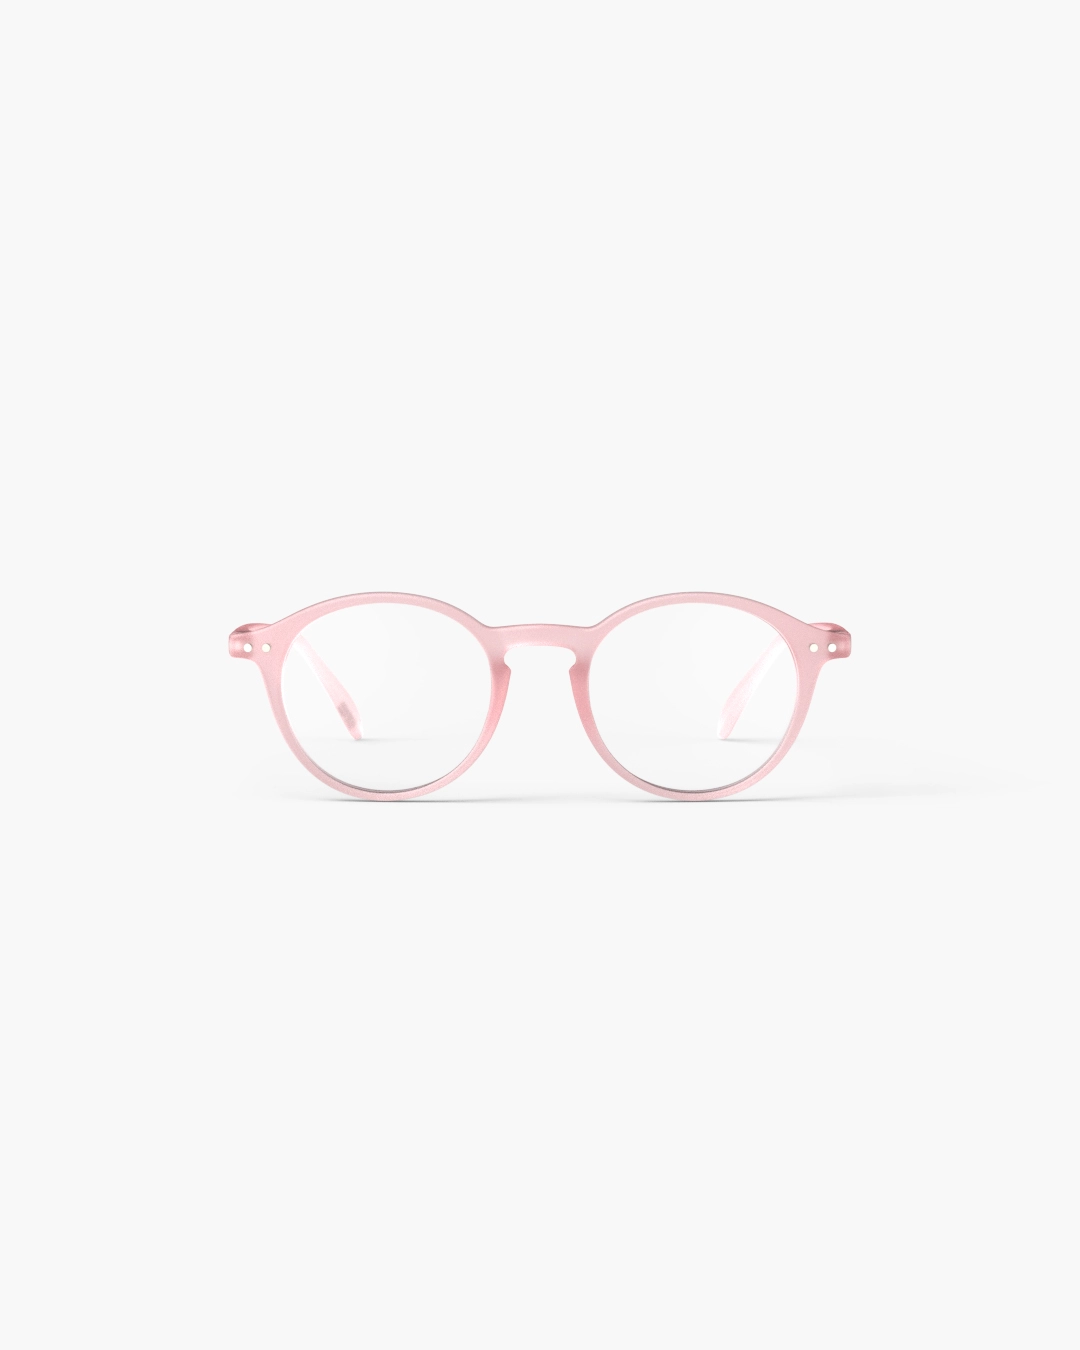 IZIPIZI #D Pink Reading Glasses +1.5